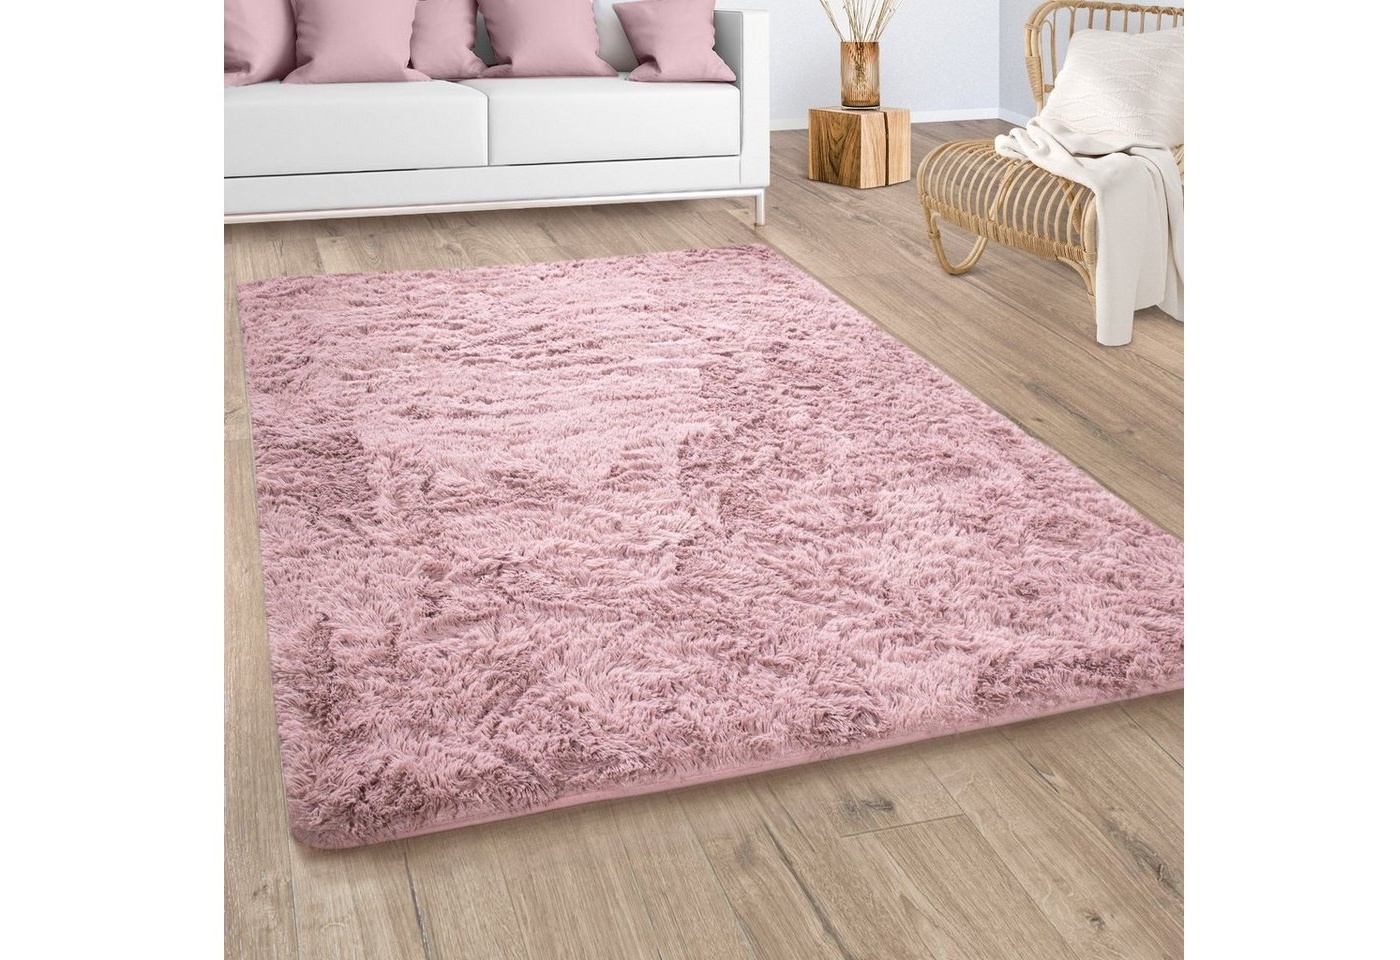 Bild von Hochflor-Teppich »Silky 591«, rund, Uni Farben, besonders weich und kuschelig, rosa